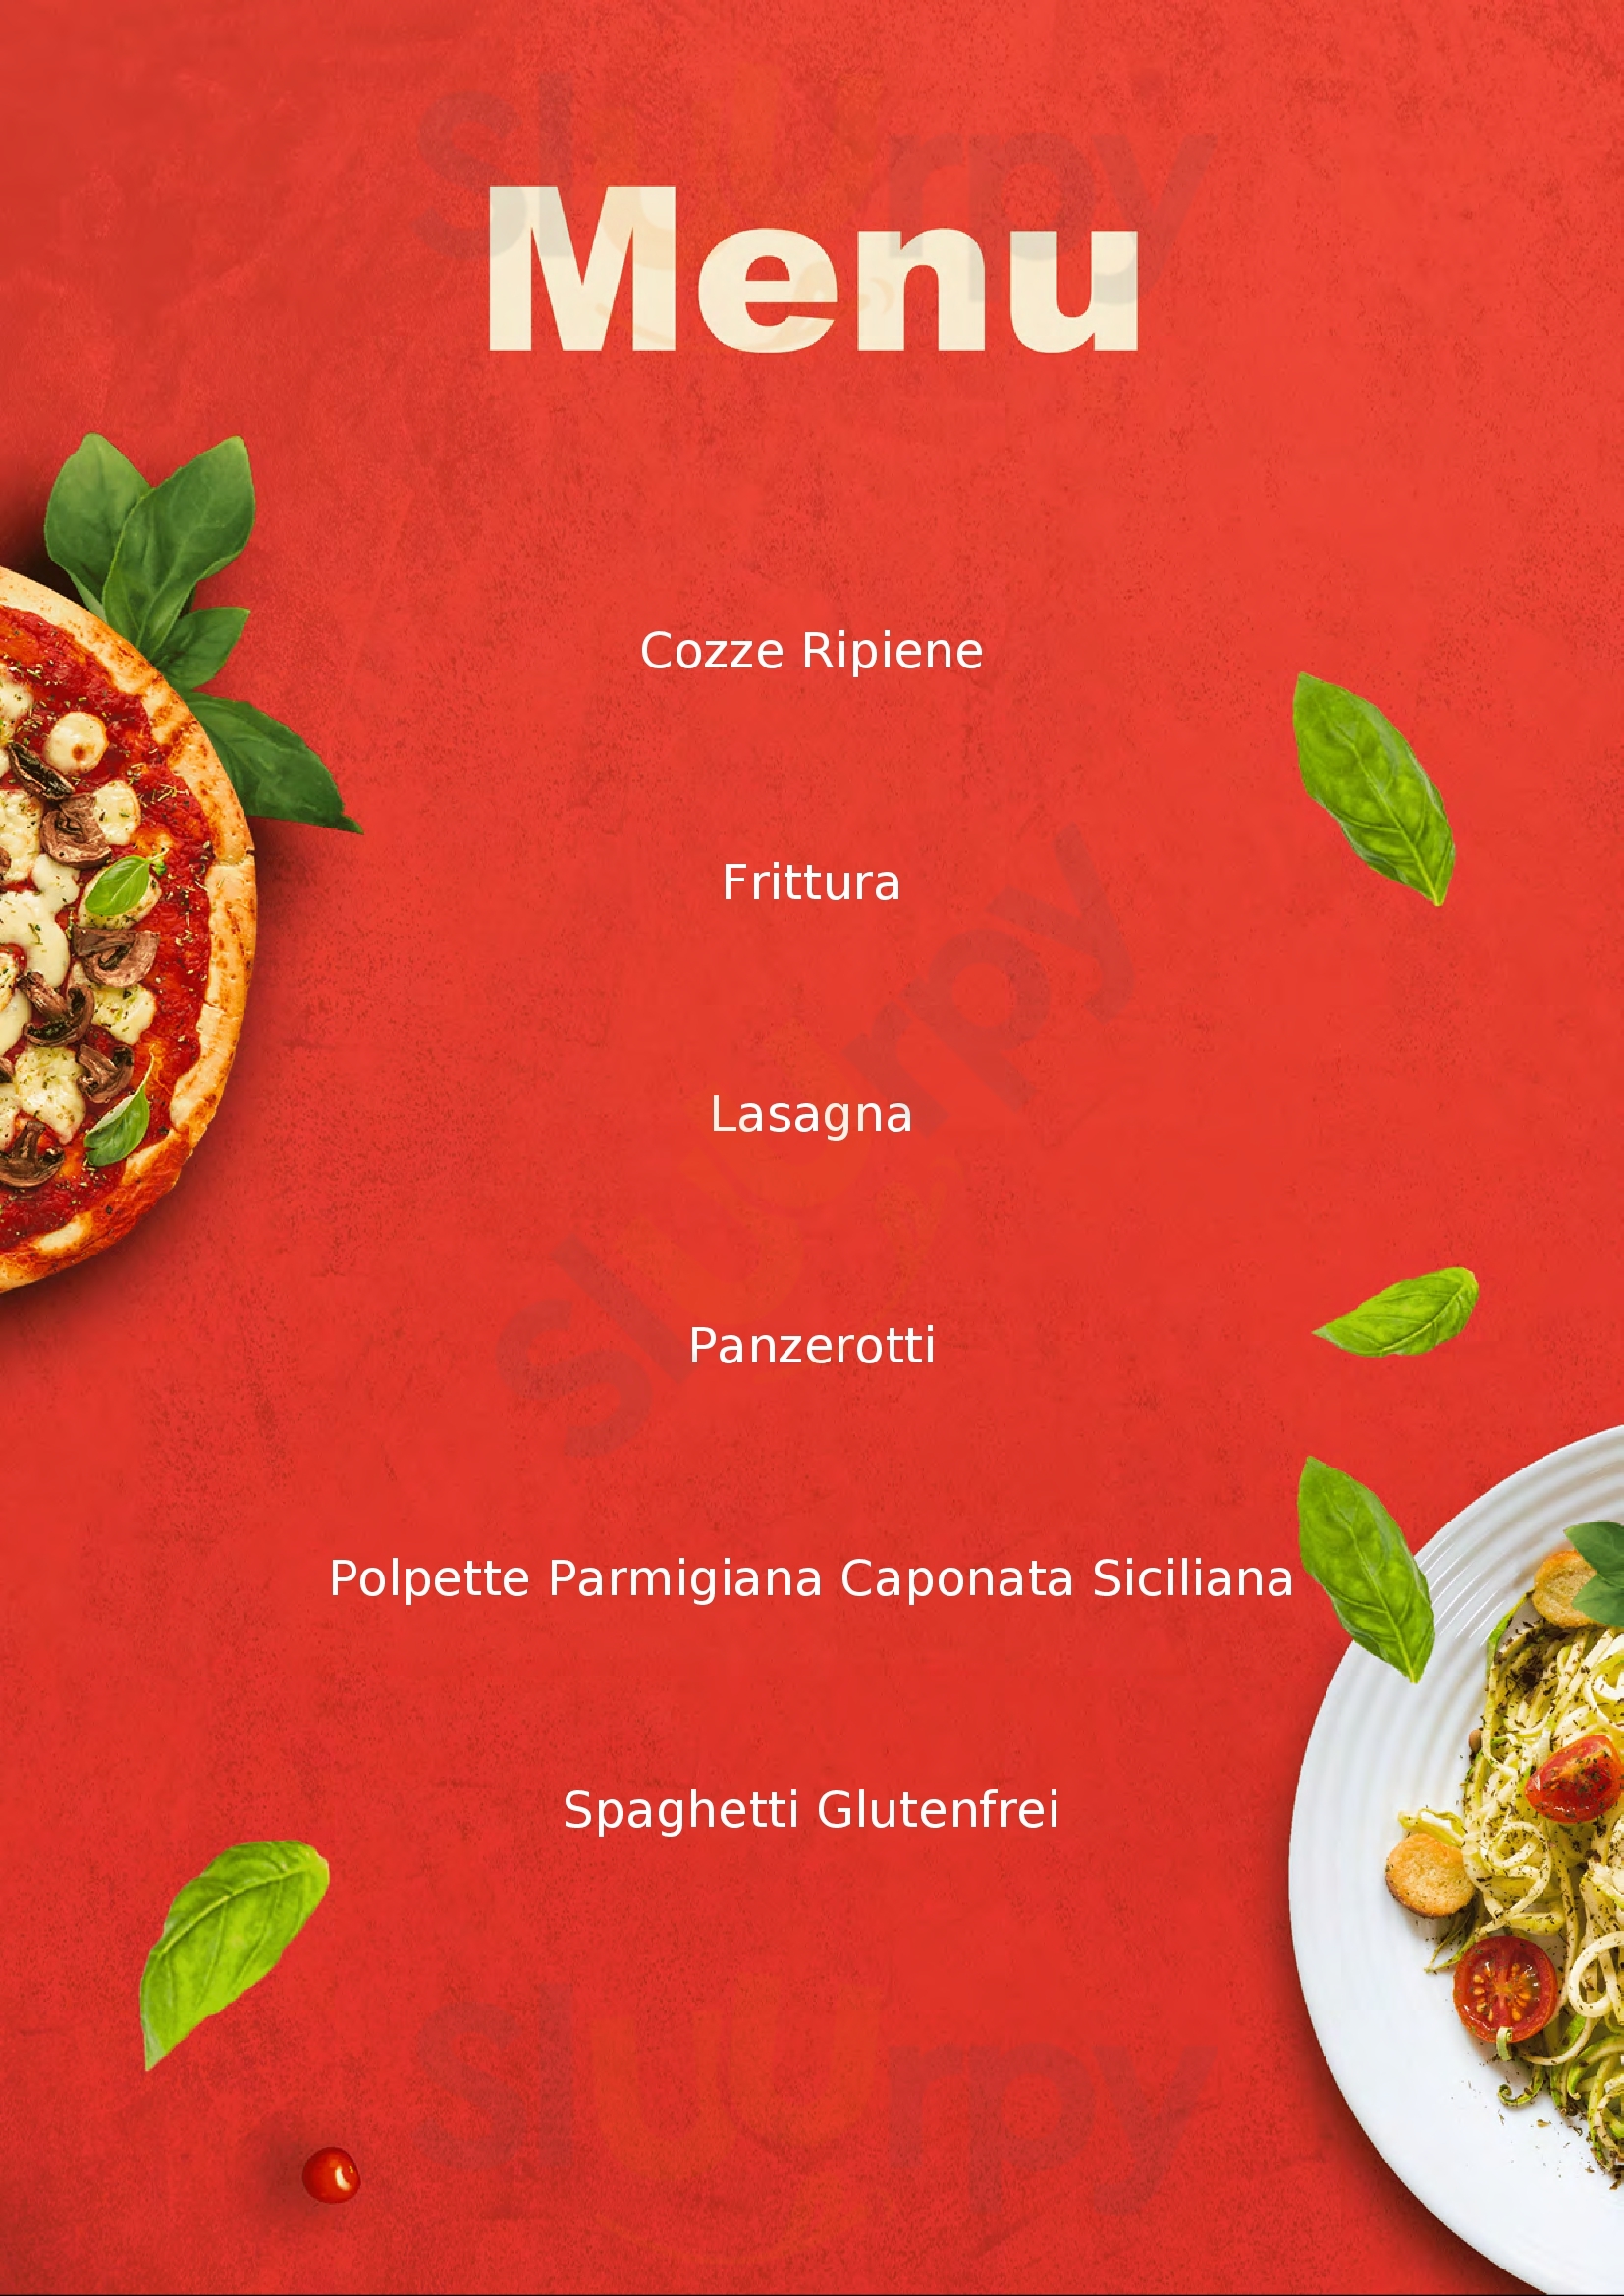 L'Orologio - Gastronomia d'Asporto Torricella menù 1 pagina